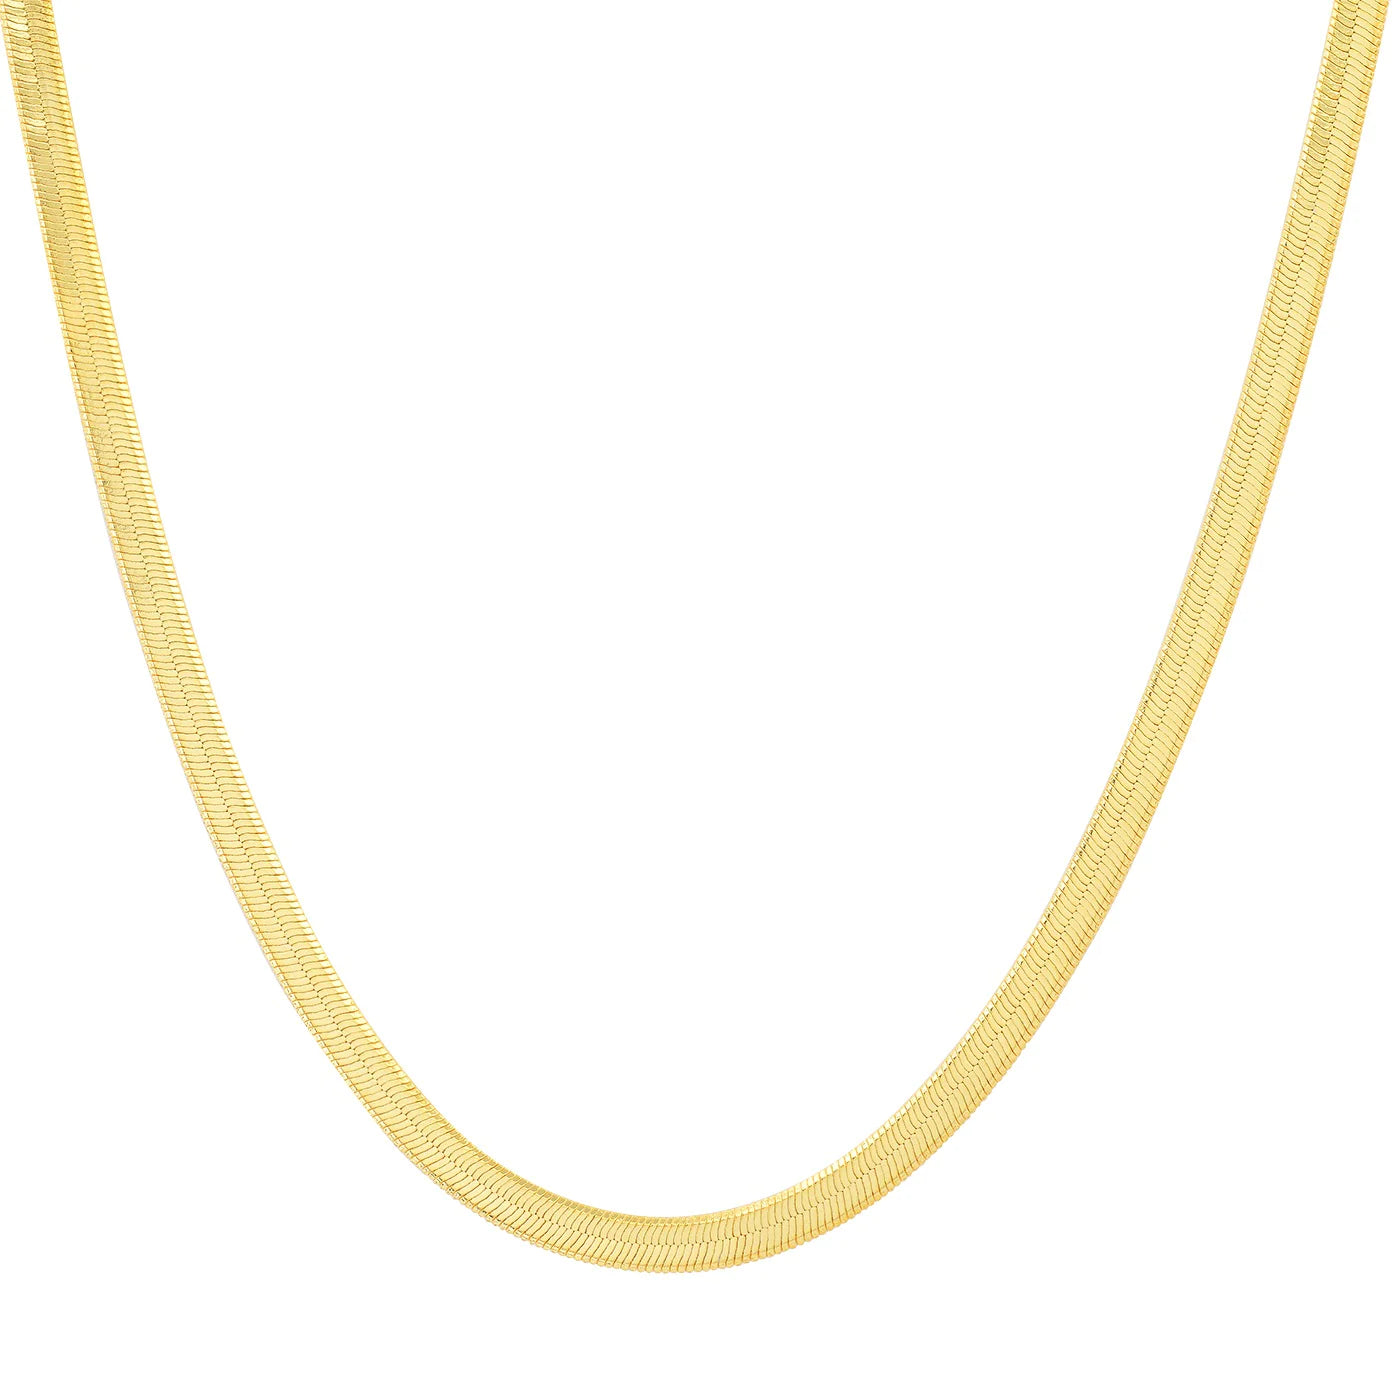 Medium Width Herringbone Necklace